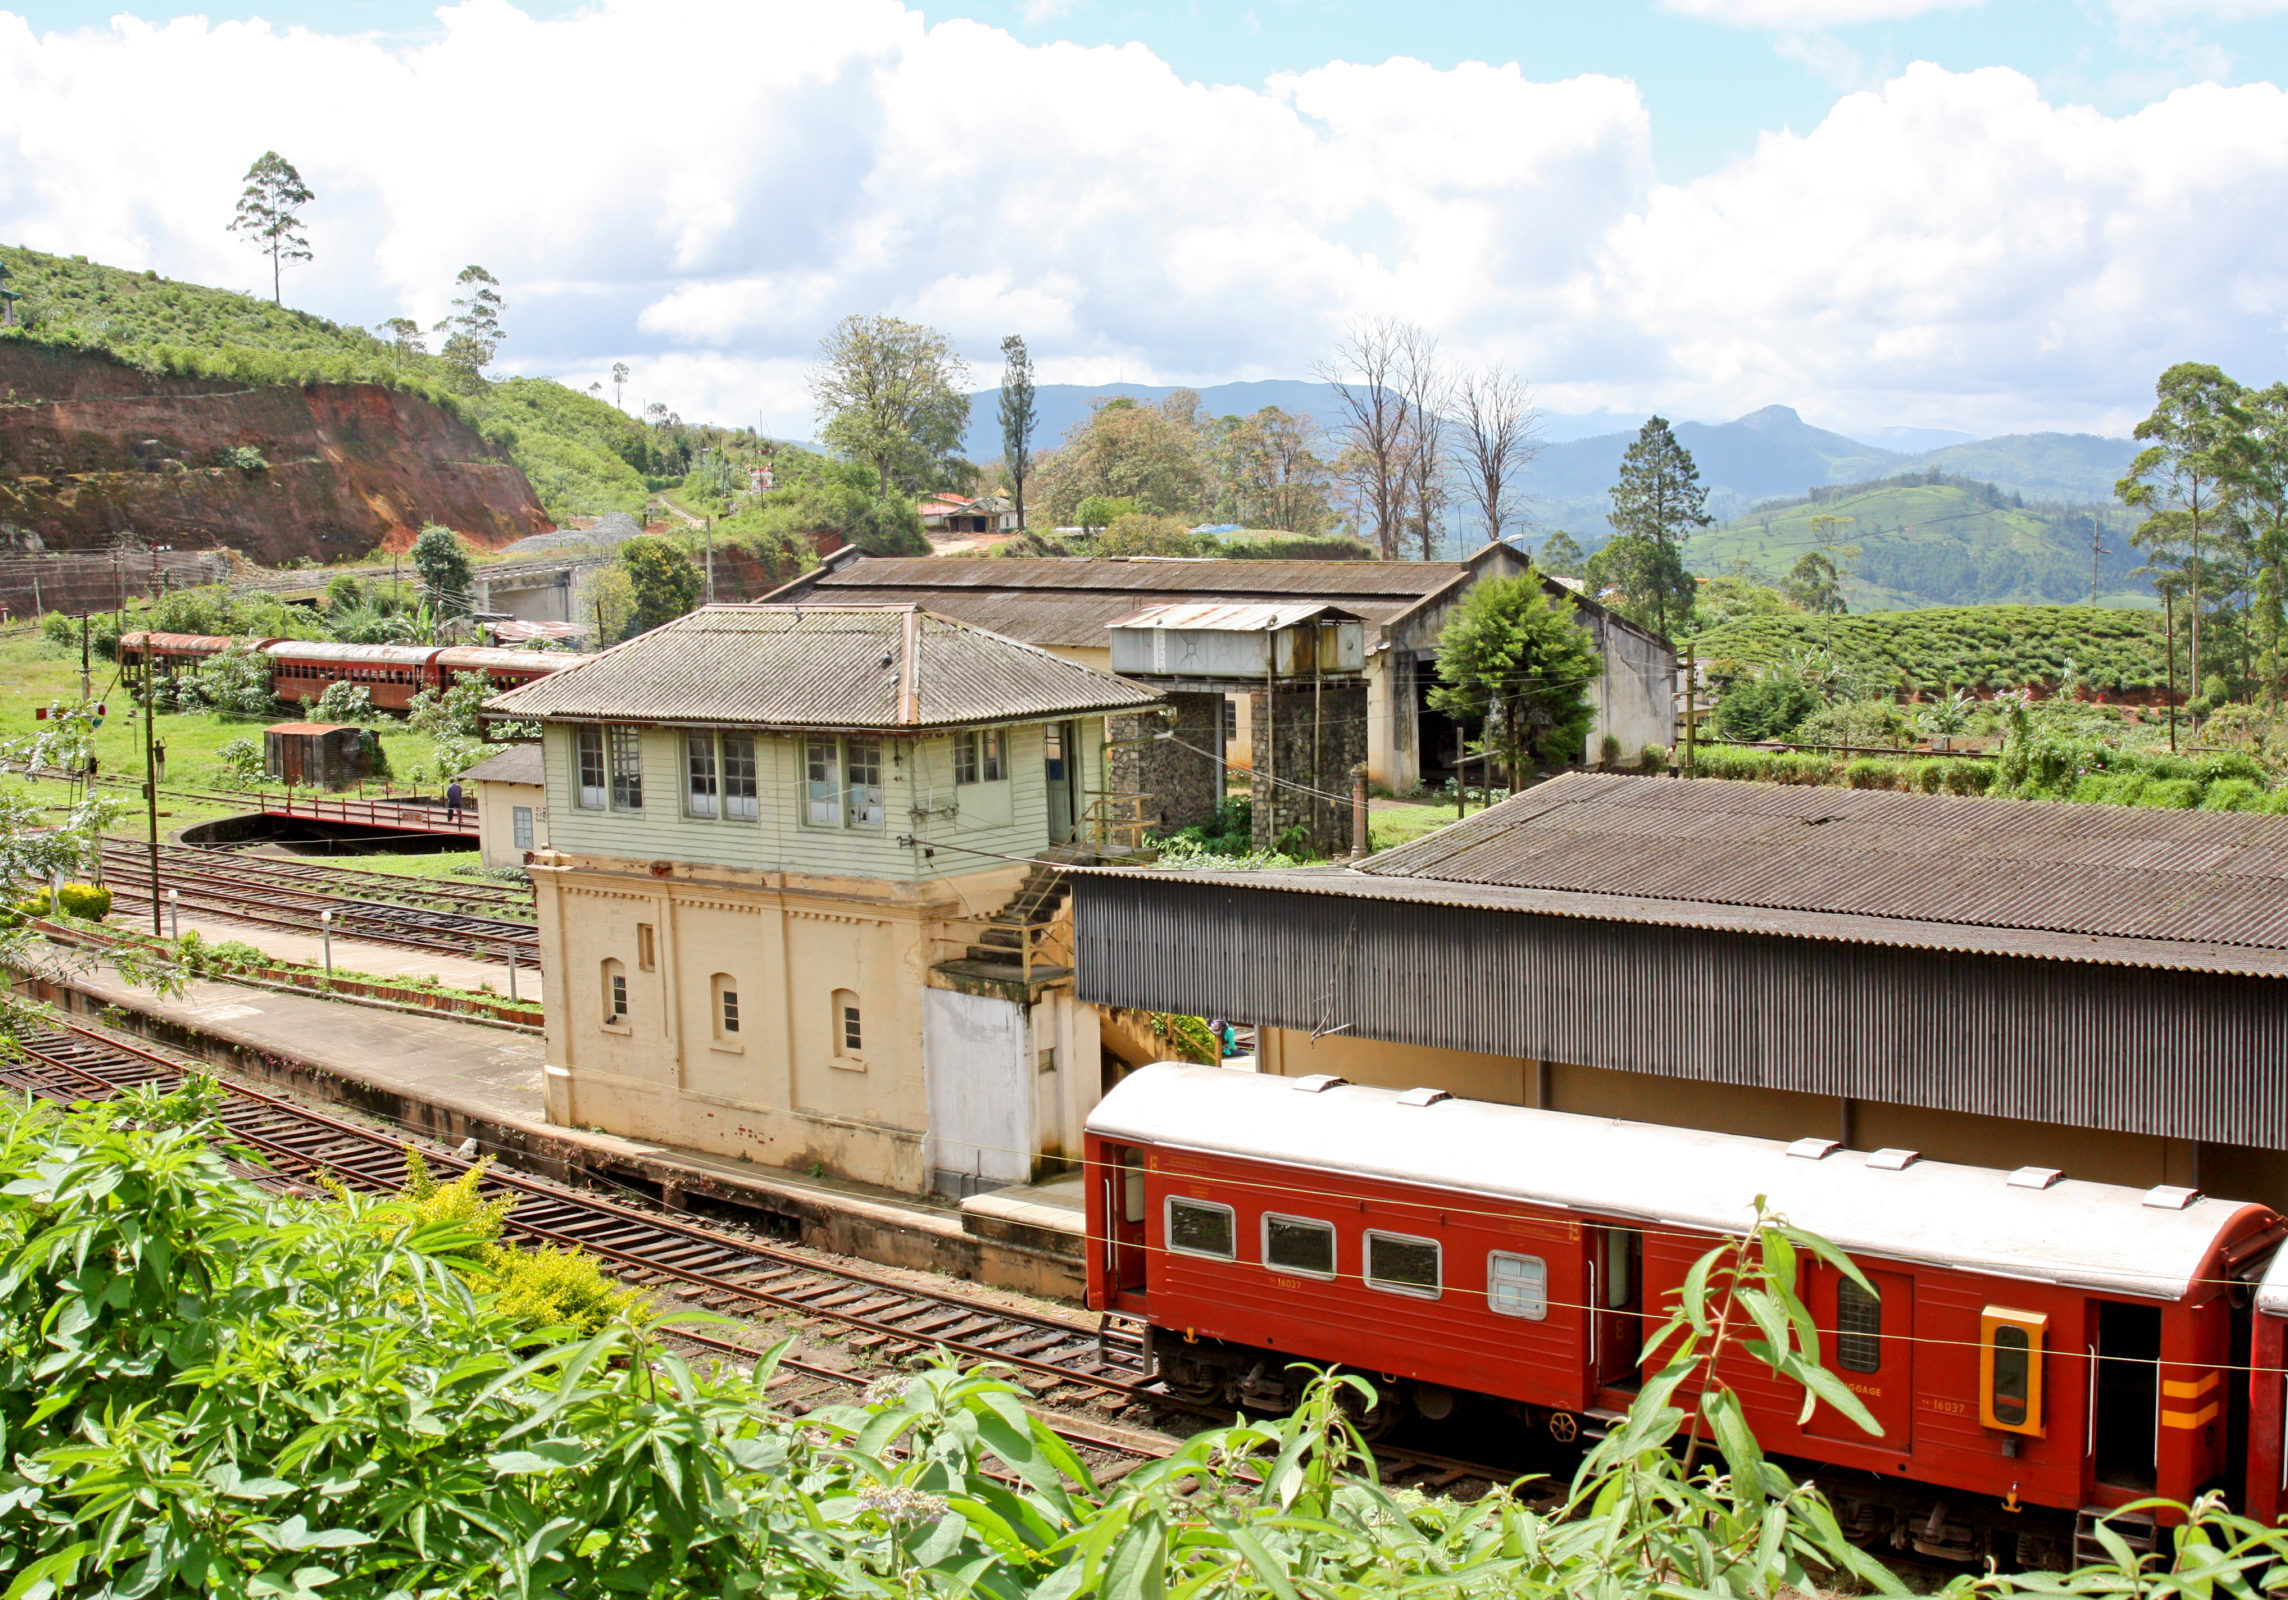 Nanuoya mit seinem beschaulichen Bahnhof liegt auf der Strecke von Kandy nach Ella  Foto: Georg J. Schulz